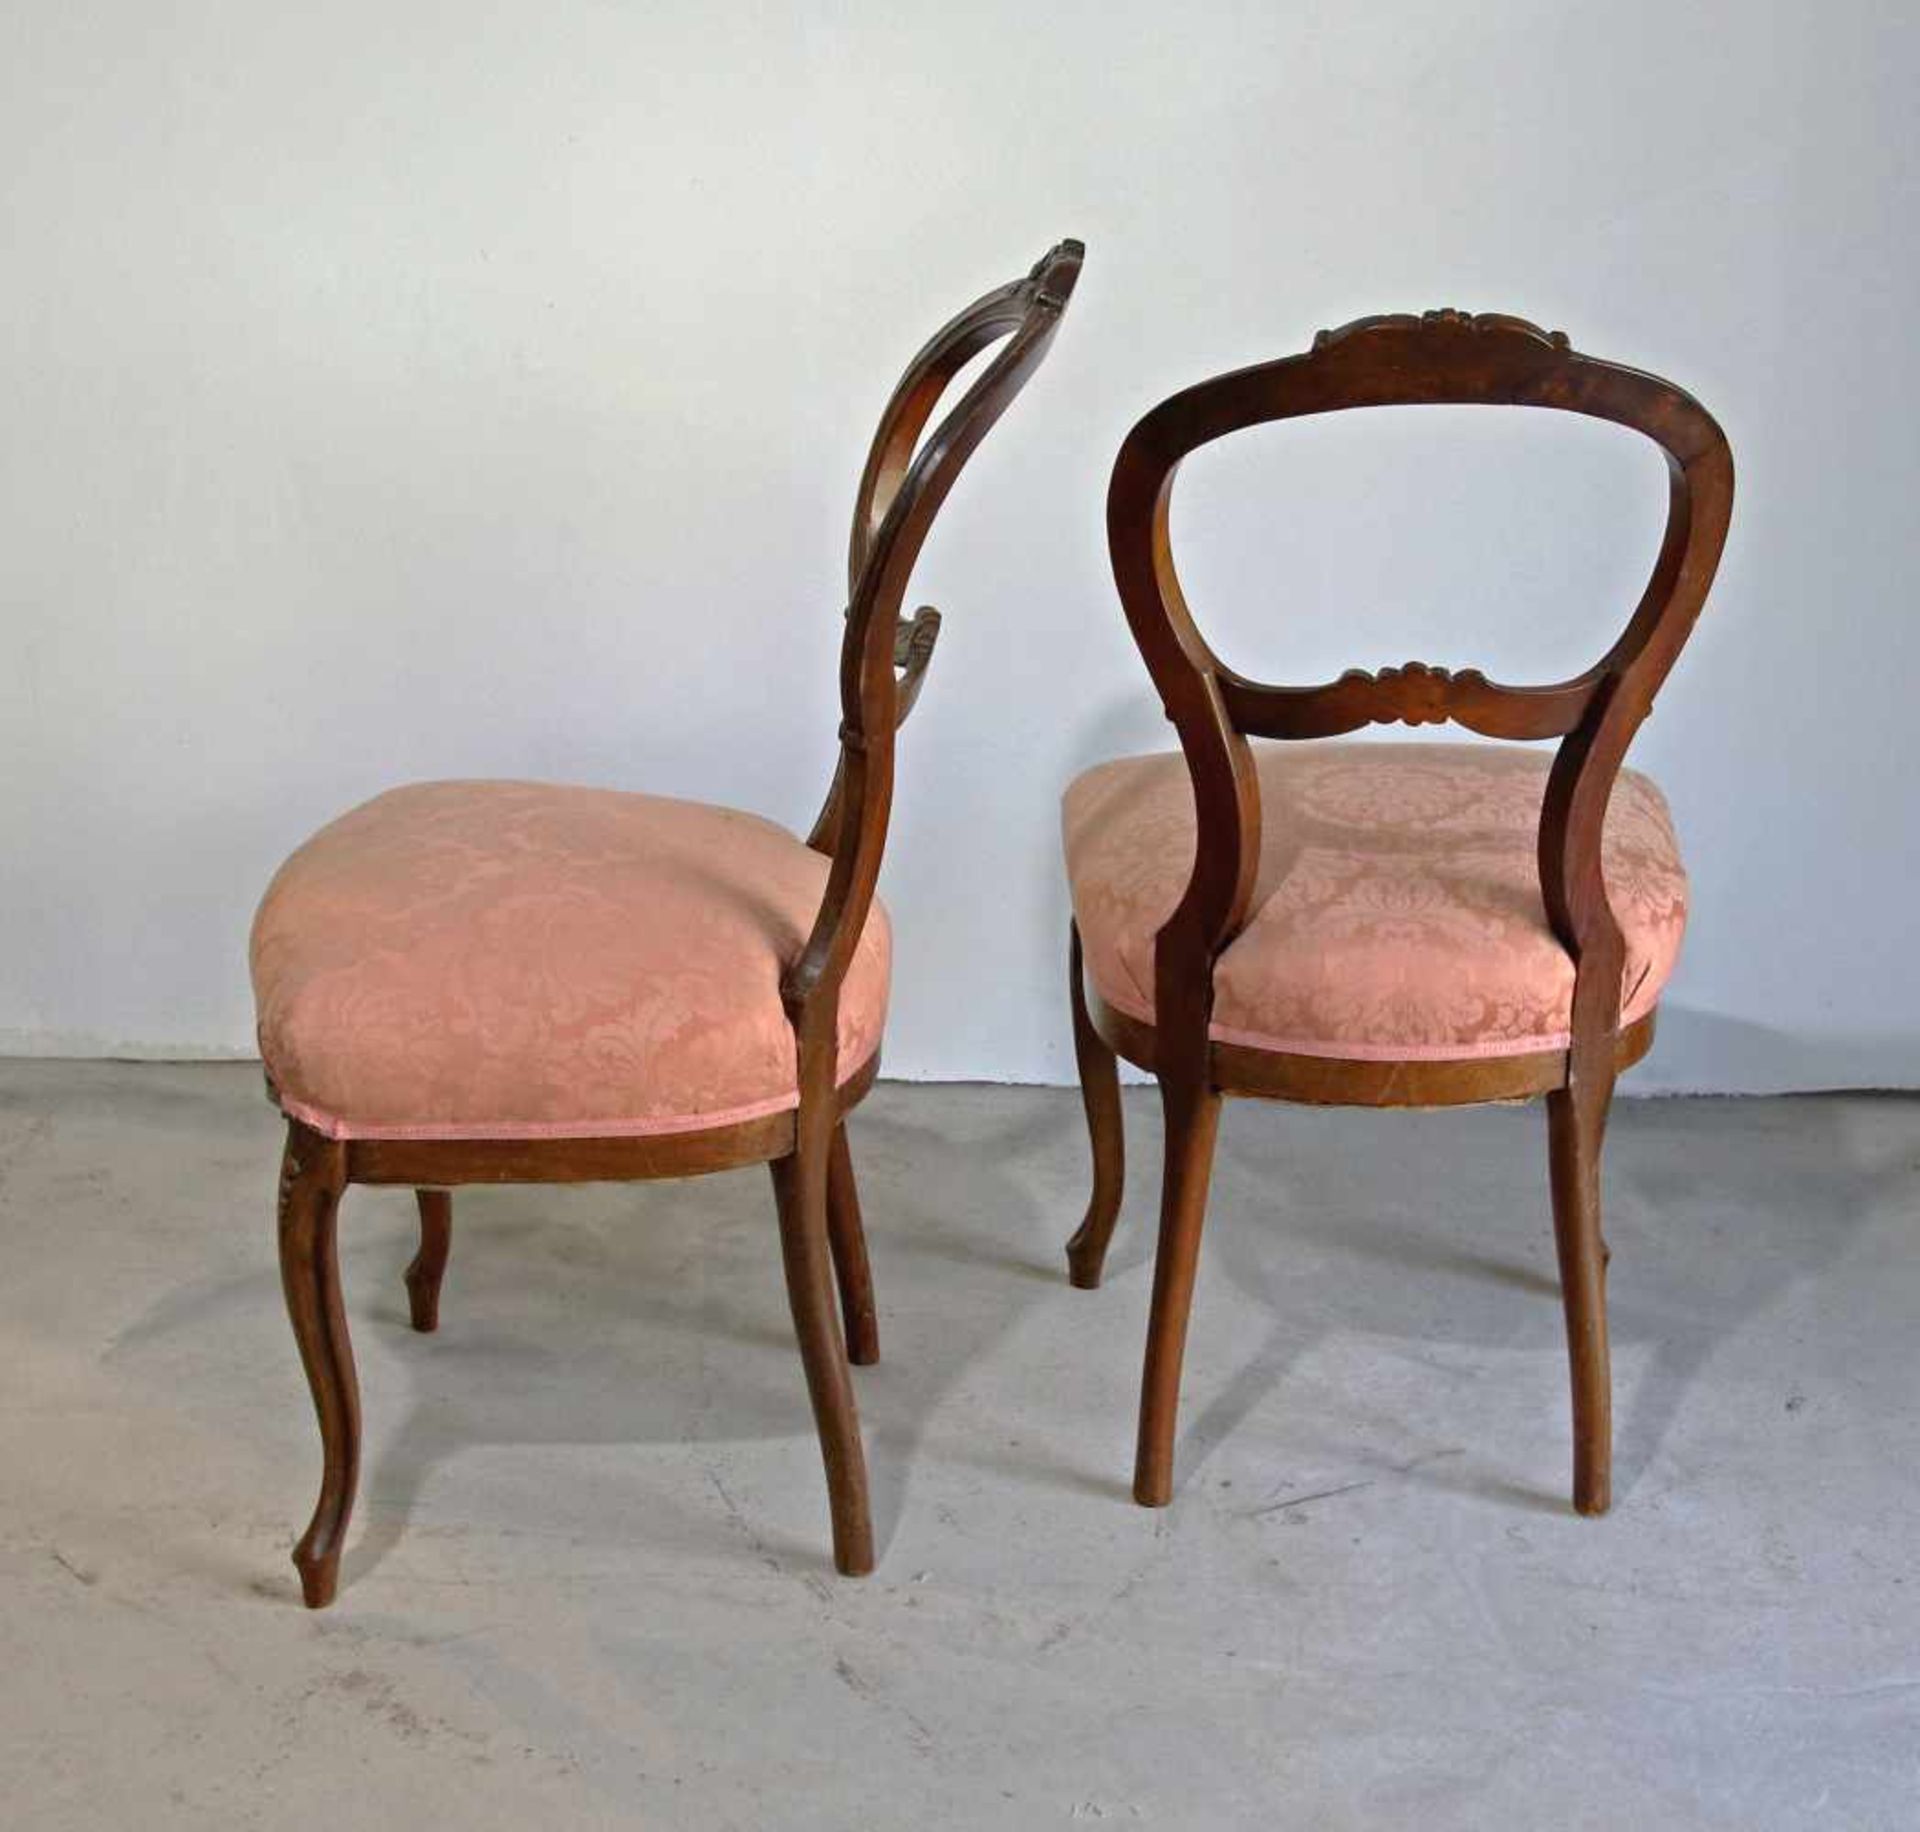 Paar Stühle Spätbiedermeierum 1840, Hartholz, beschnitzt, verziert, Sitzflächen gepolstert und - Image 2 of 2